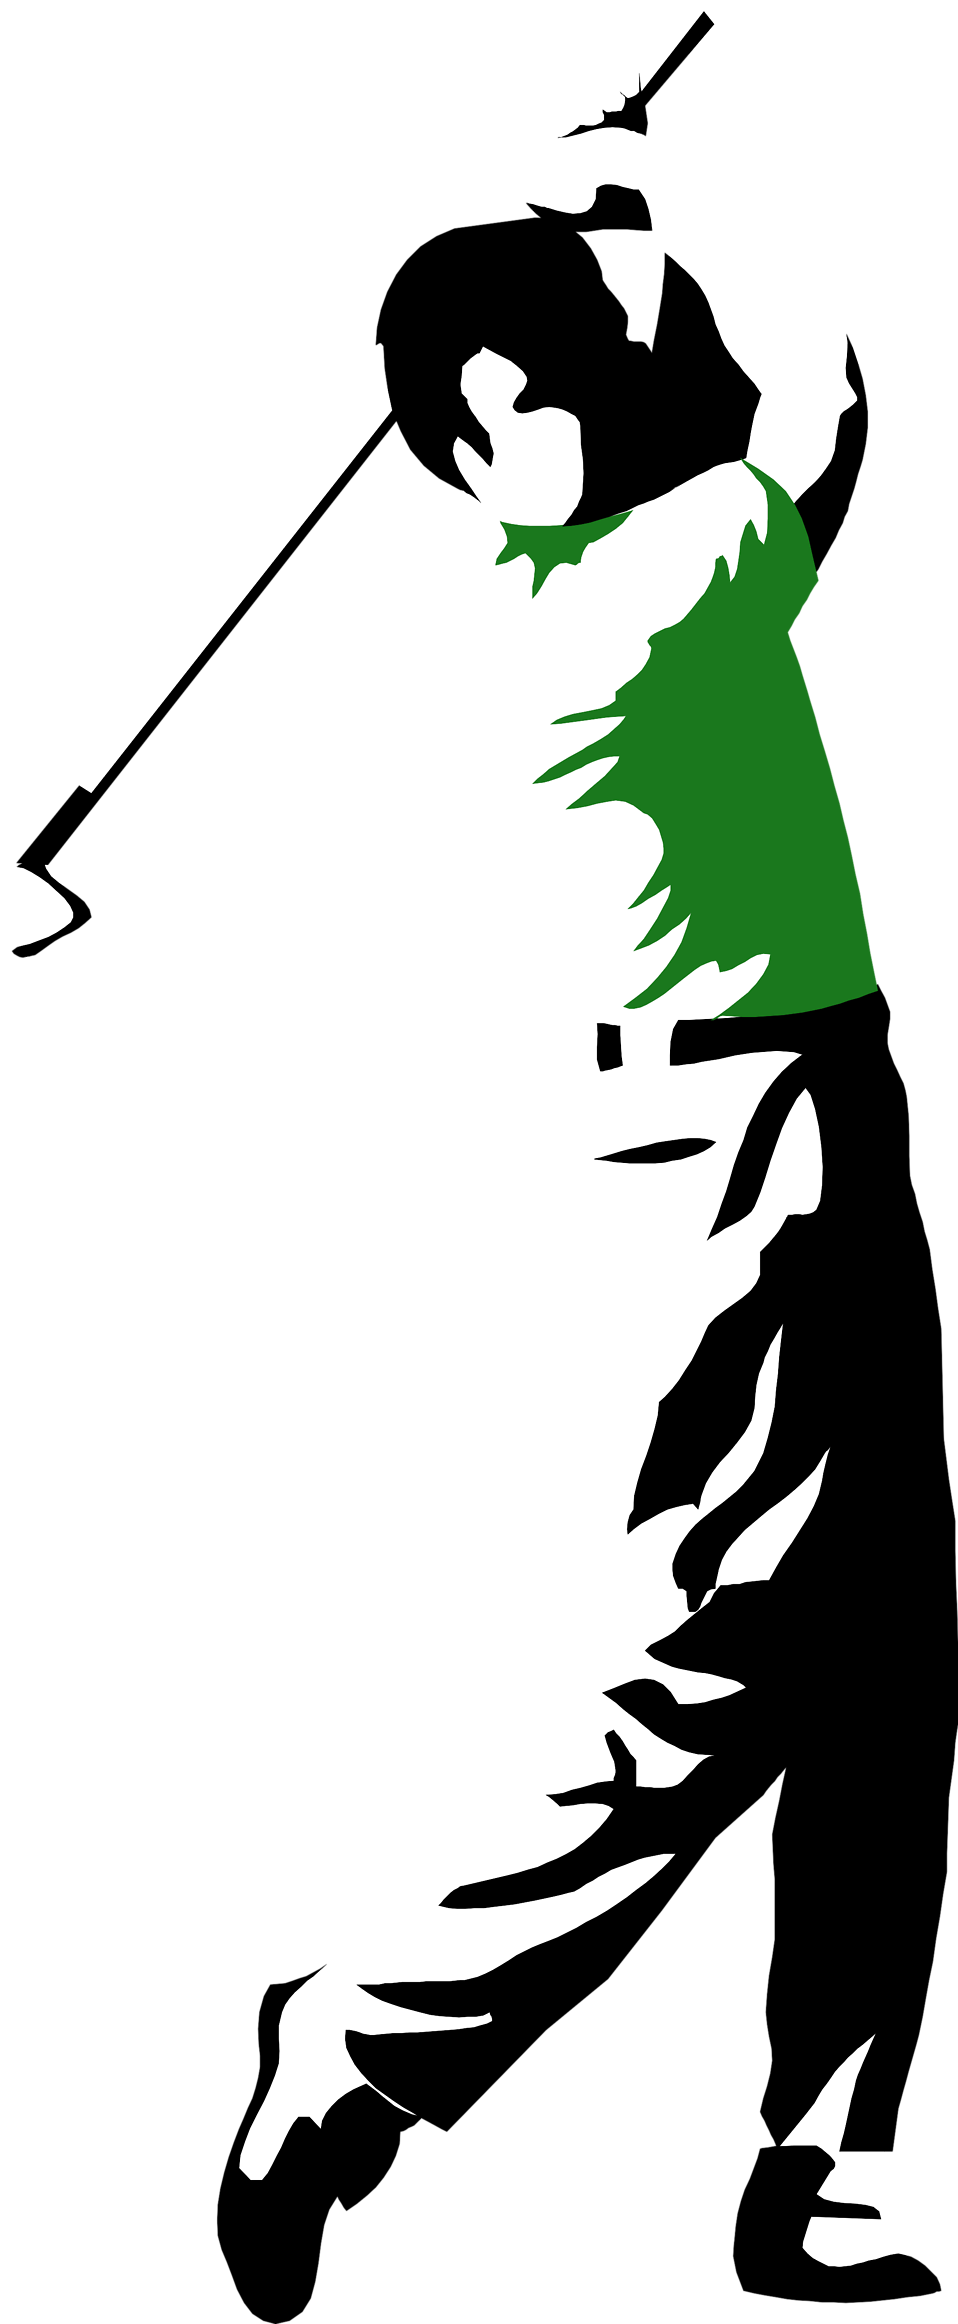 Swinging A Golf Club (958x2324)